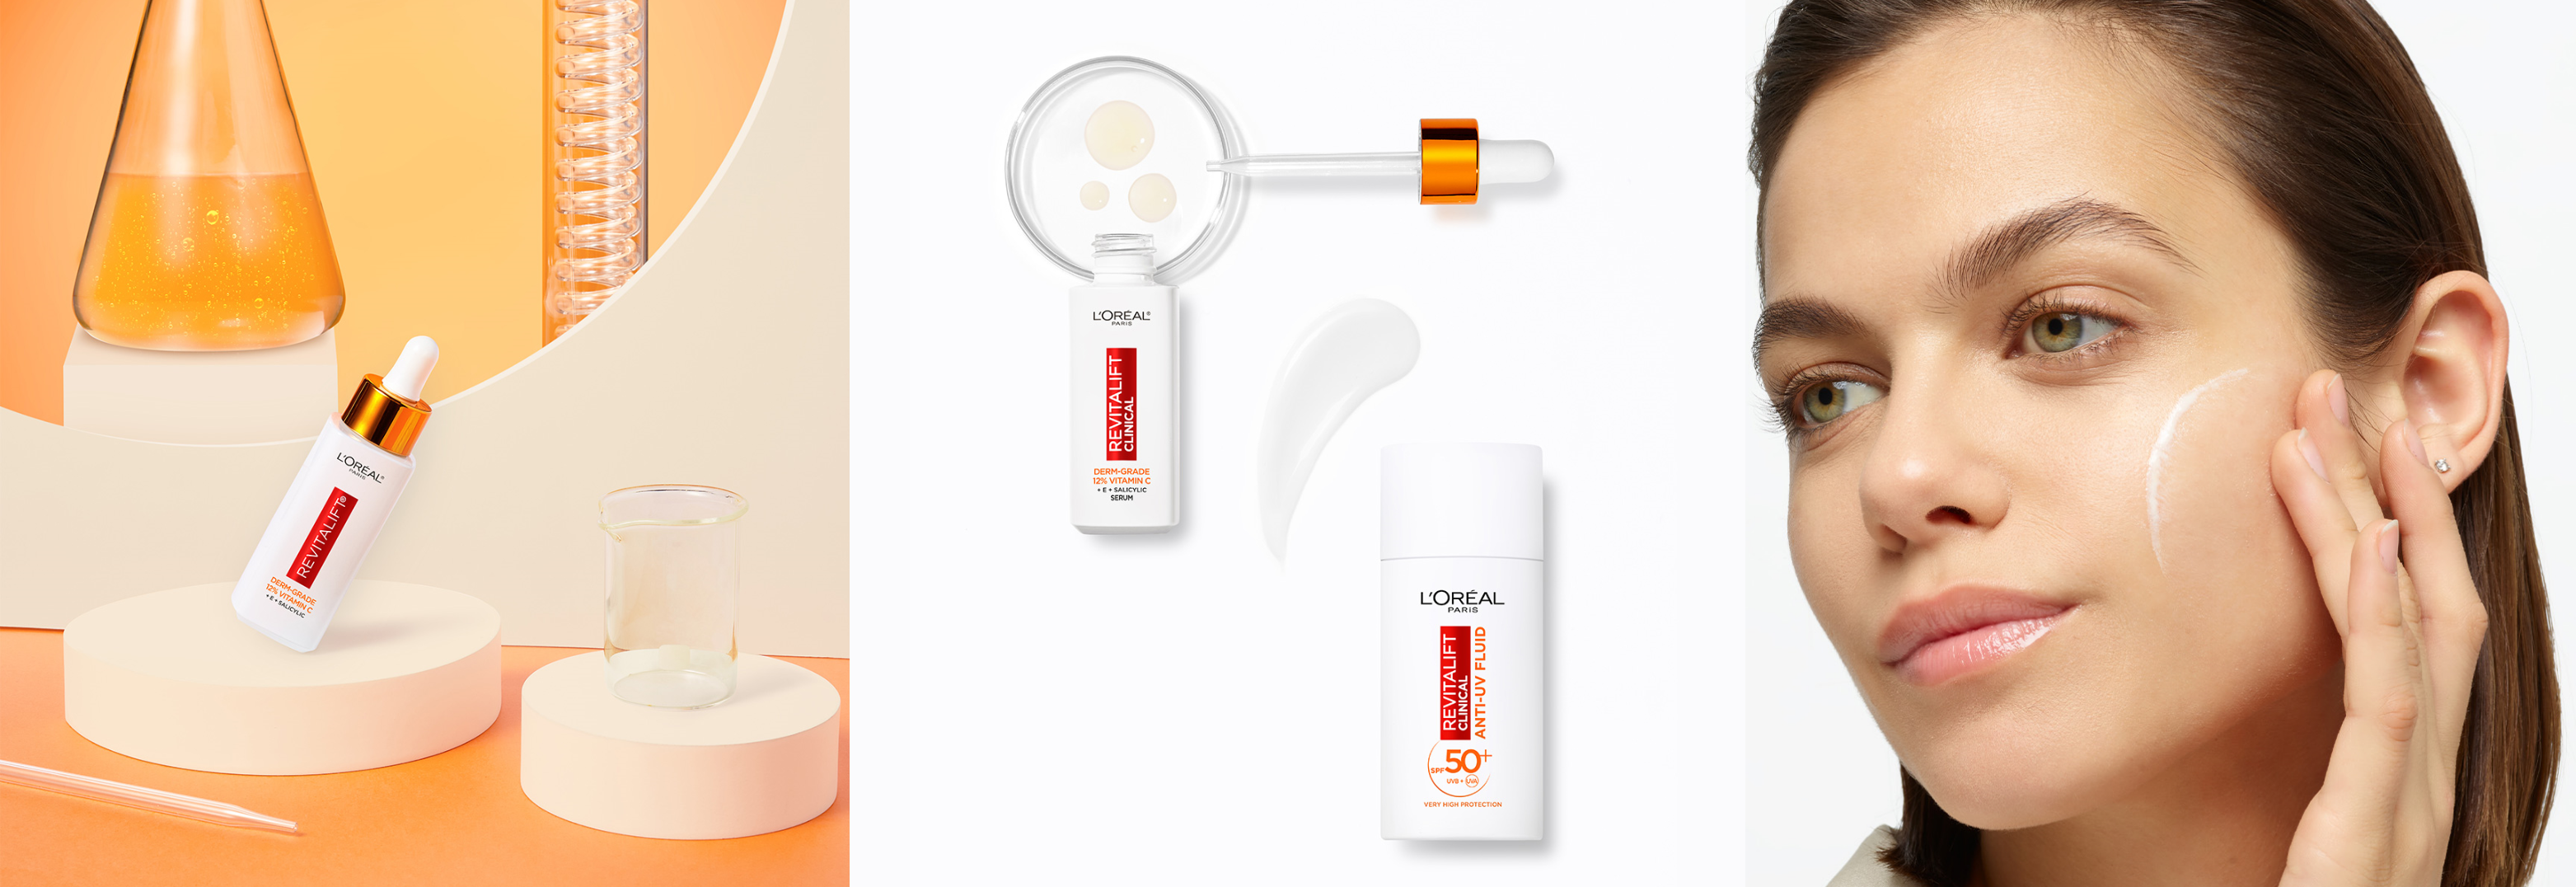 Mask Group 17 Витамин С и SPF са задължителни елементи от всеки ритуал за грижа за кожата – открийте новата линия L’Oréal Paris Revitalift и изпробайте продуктите